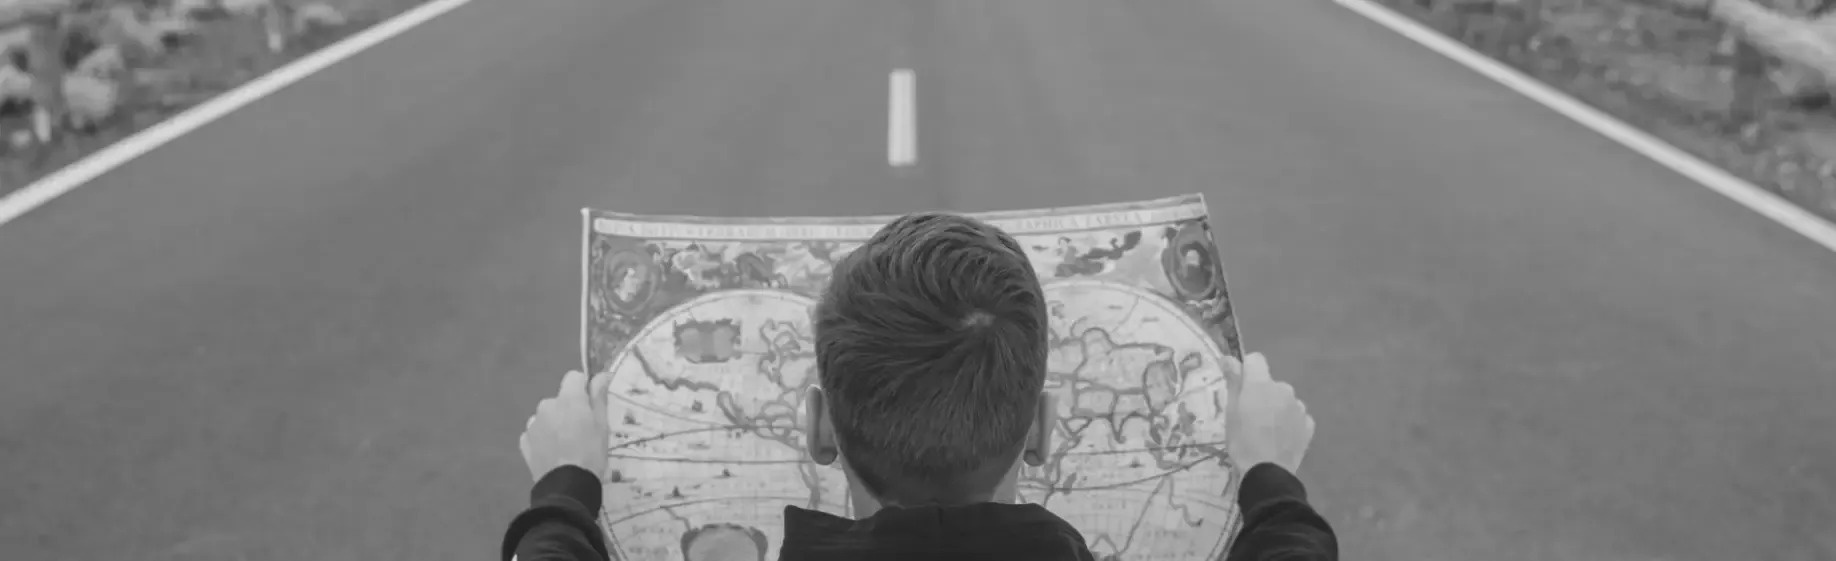 um homem está olhando para um mapa ao lado de uma estrada .